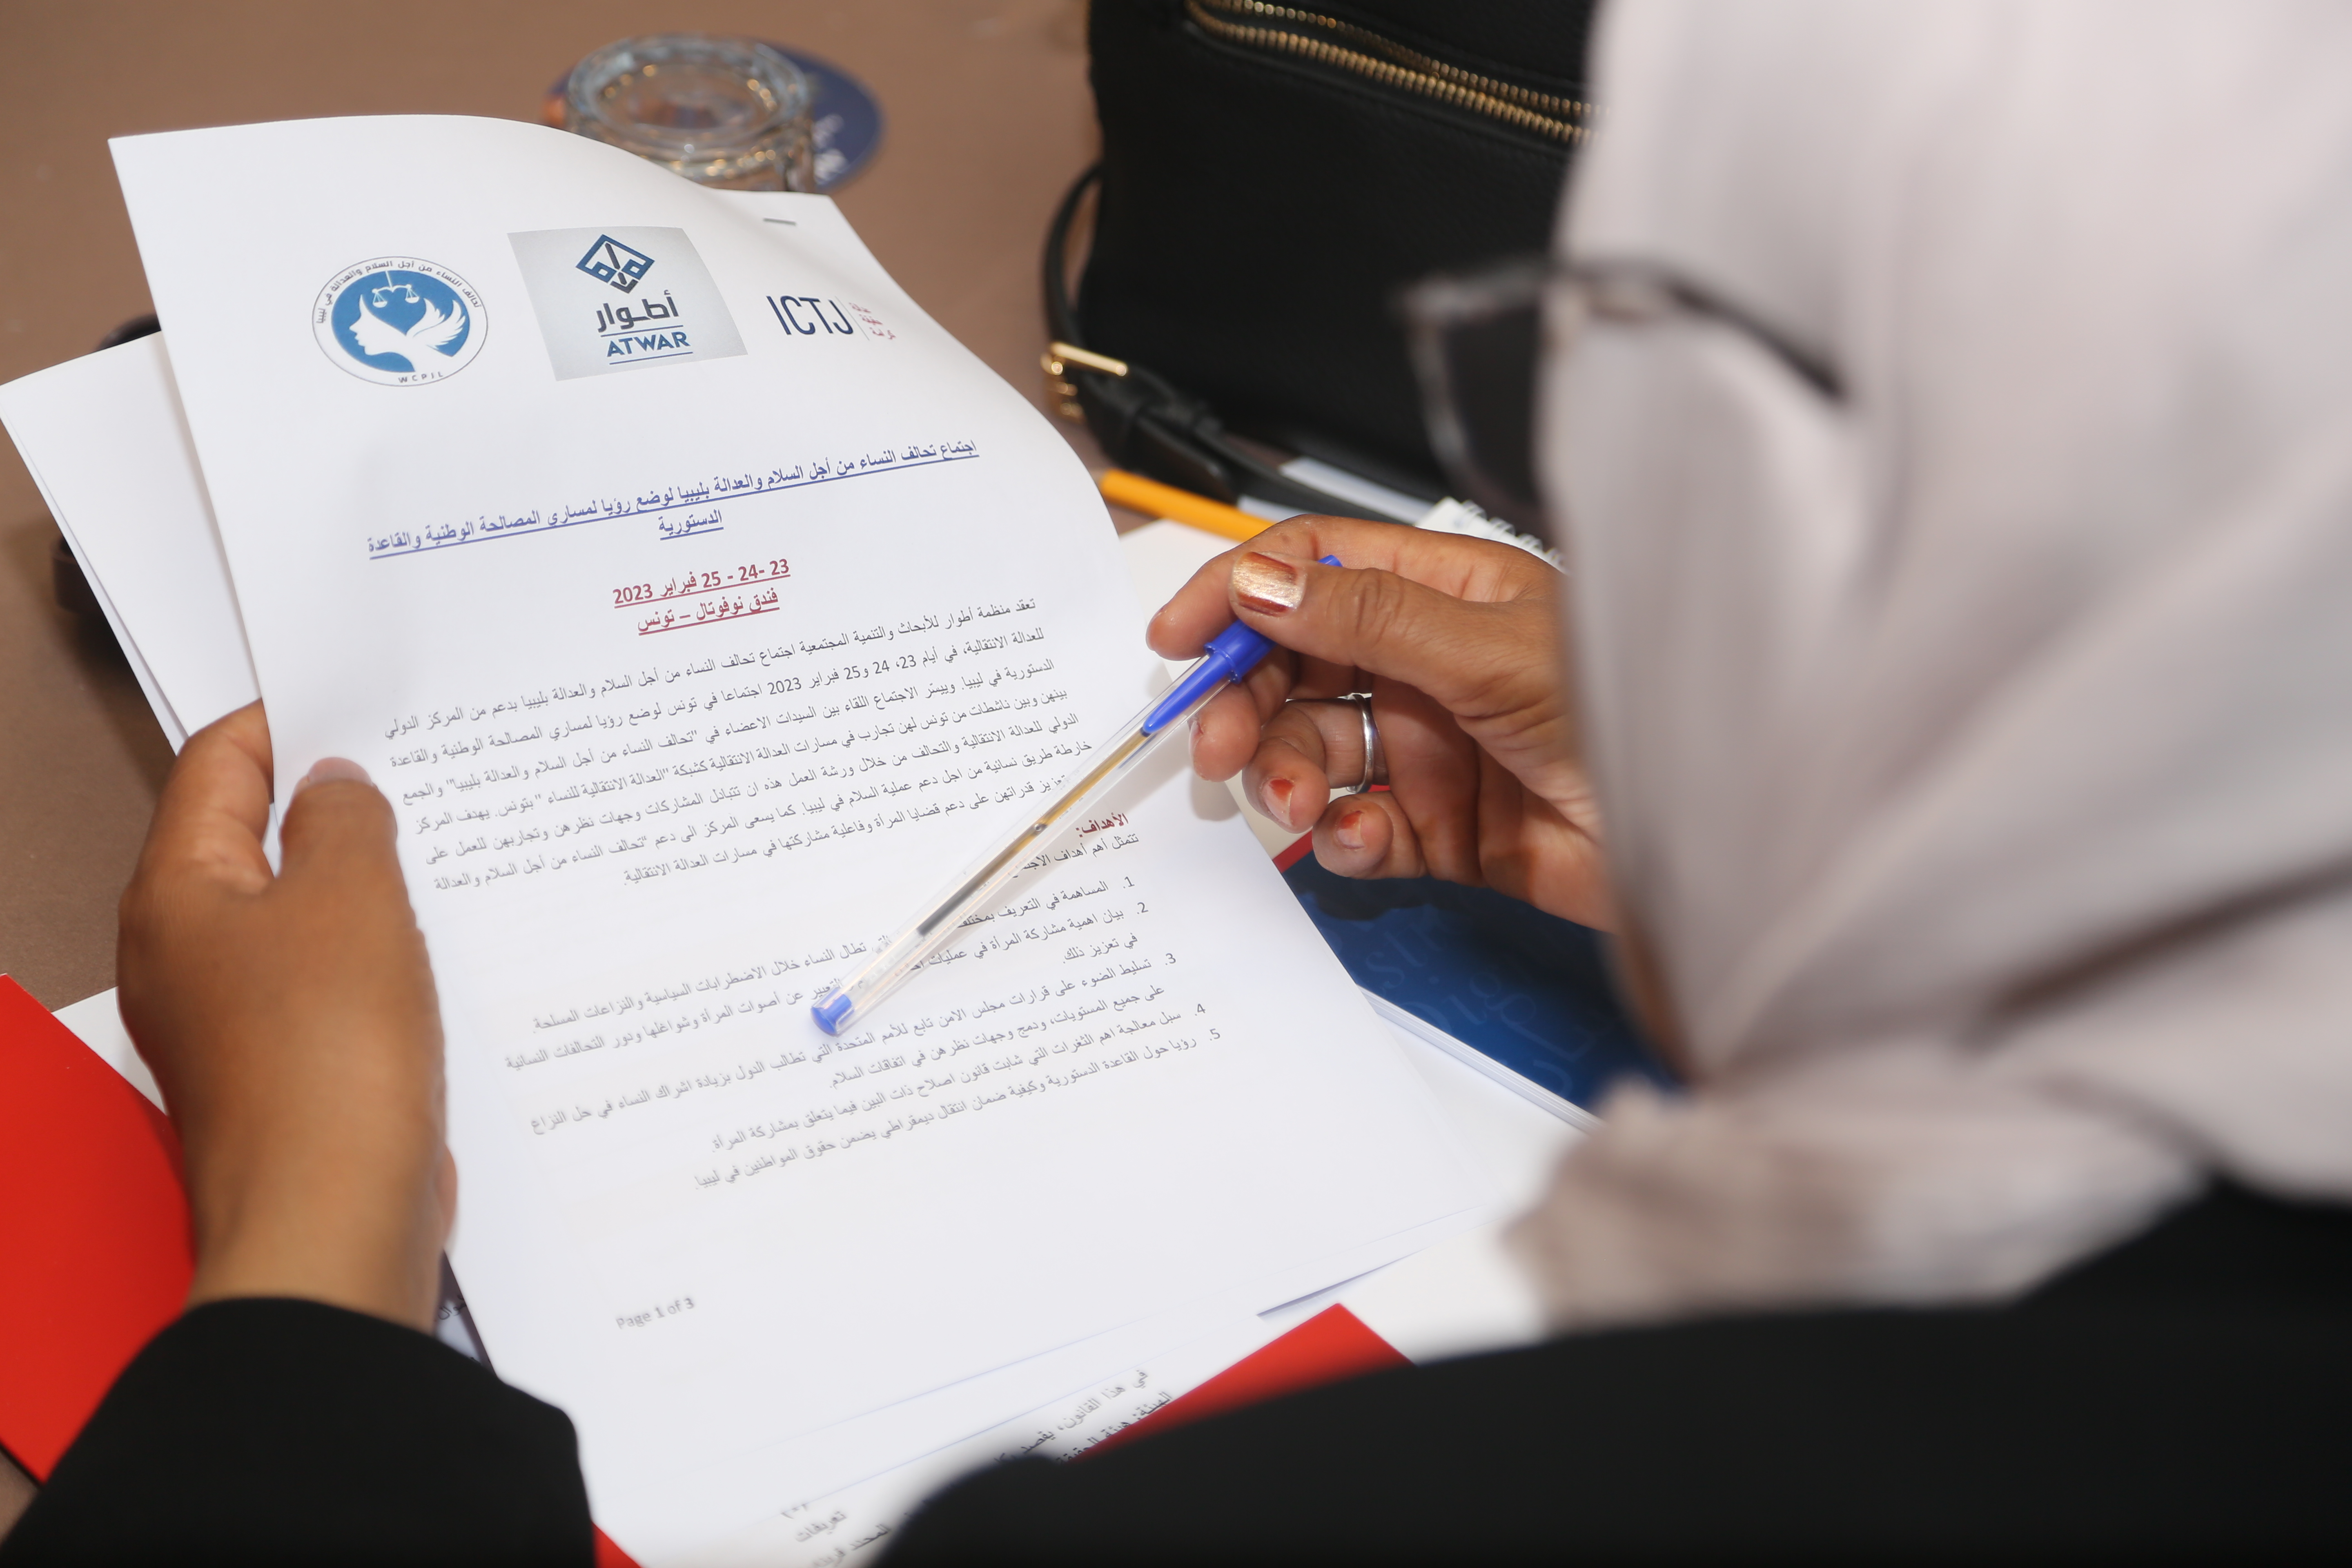 مشارك ليبي يقرأ مذكرة البرنامج والمفهوم لورشة عمل فبراير 2023 في تونس.